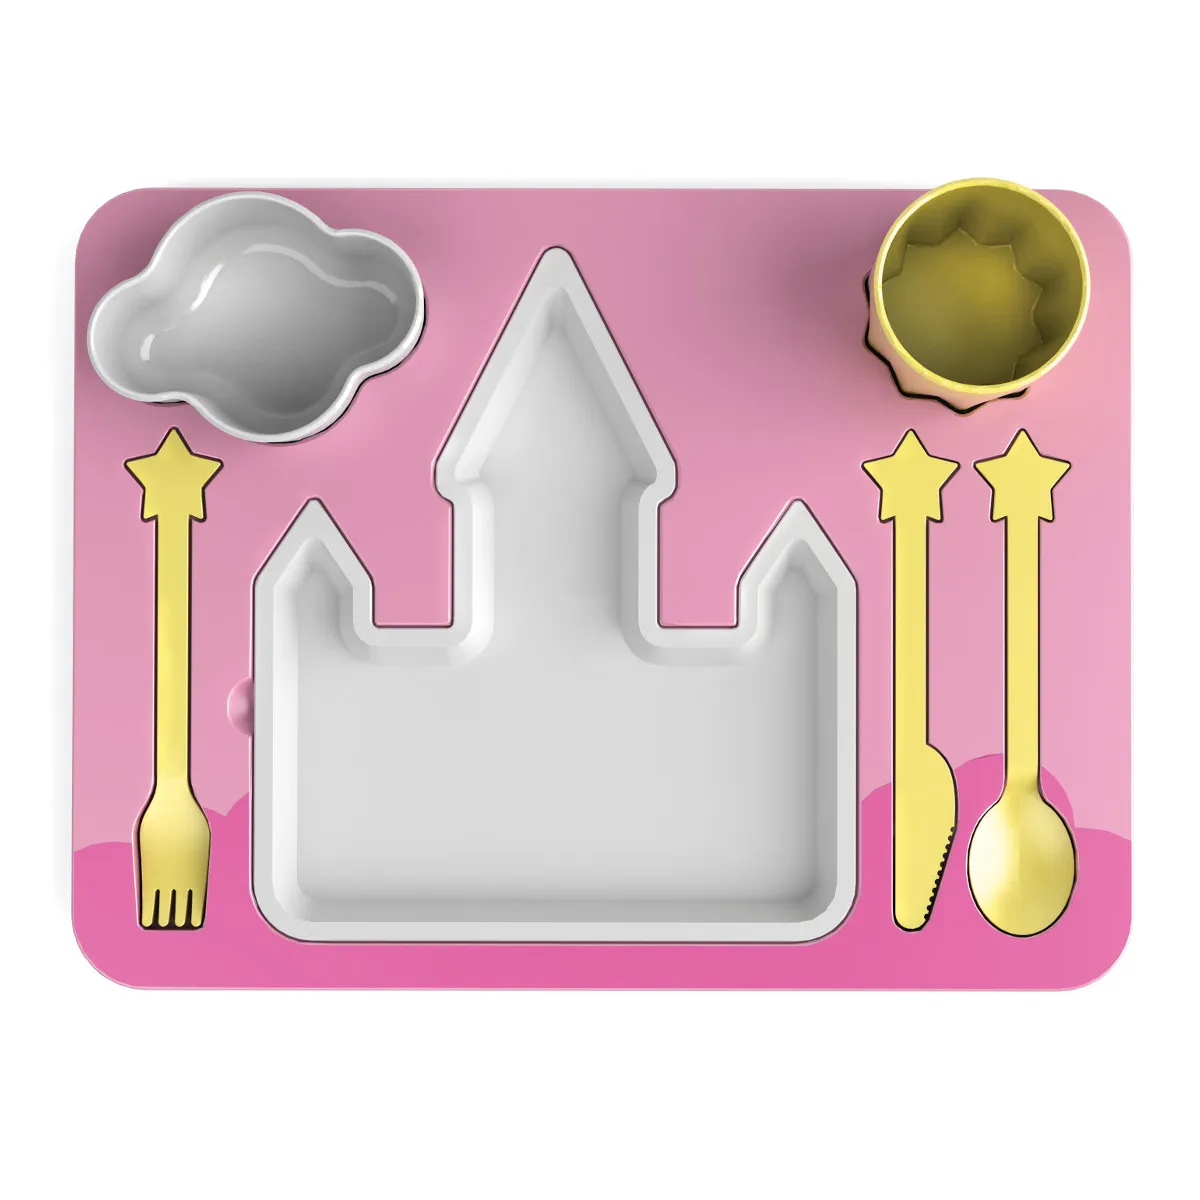 Kinder Dinner Set - Princess